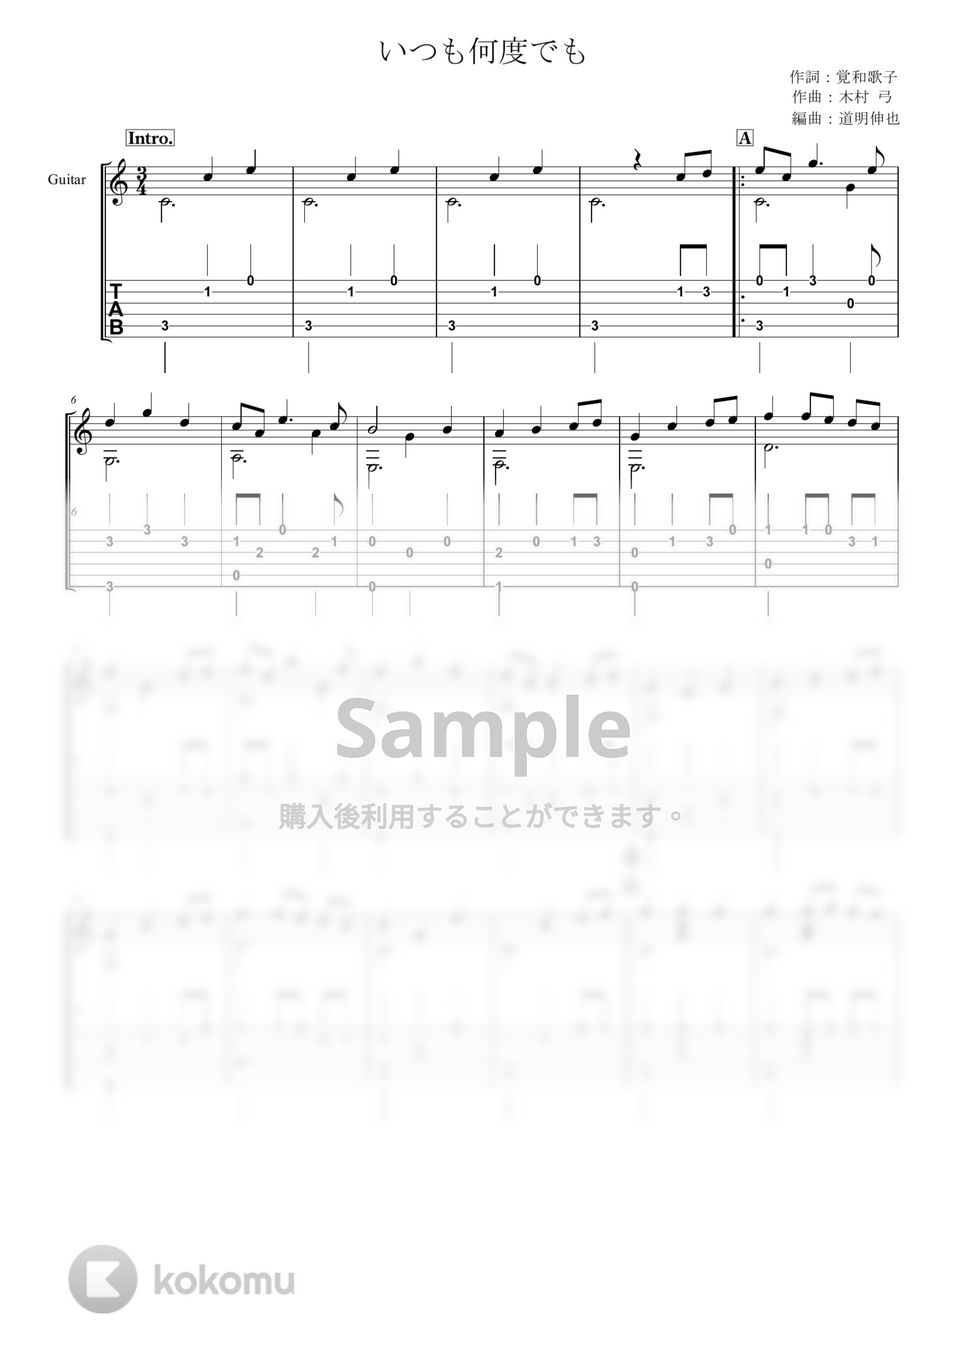 木村弓 - 【ソロギター楽譜】いつも何度でも【TAB譜】 by shindome